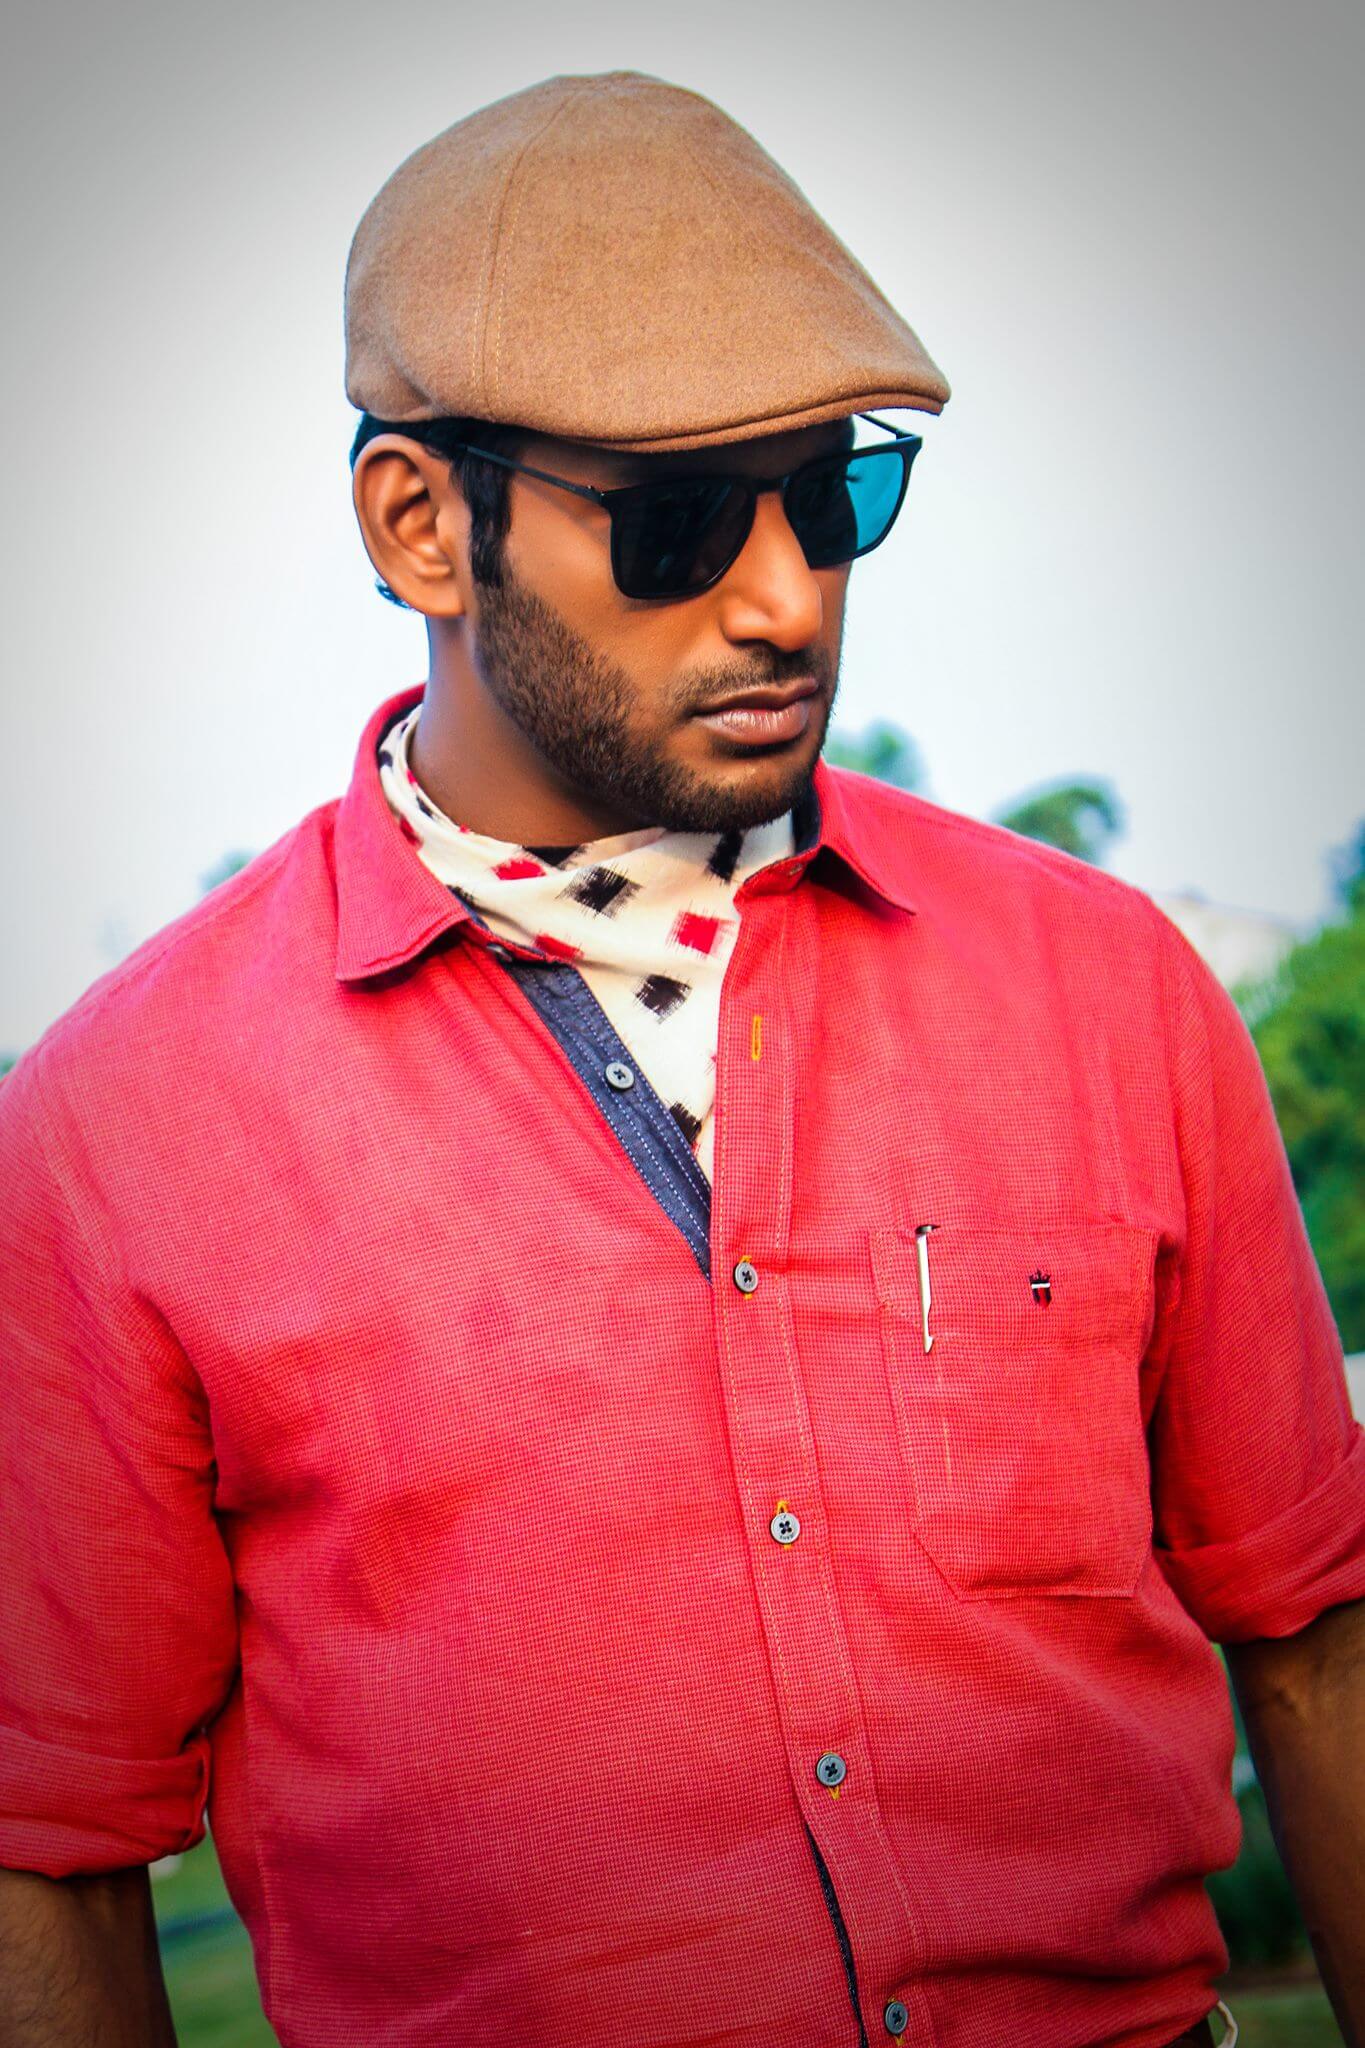 Vishal close up shot in red shirt